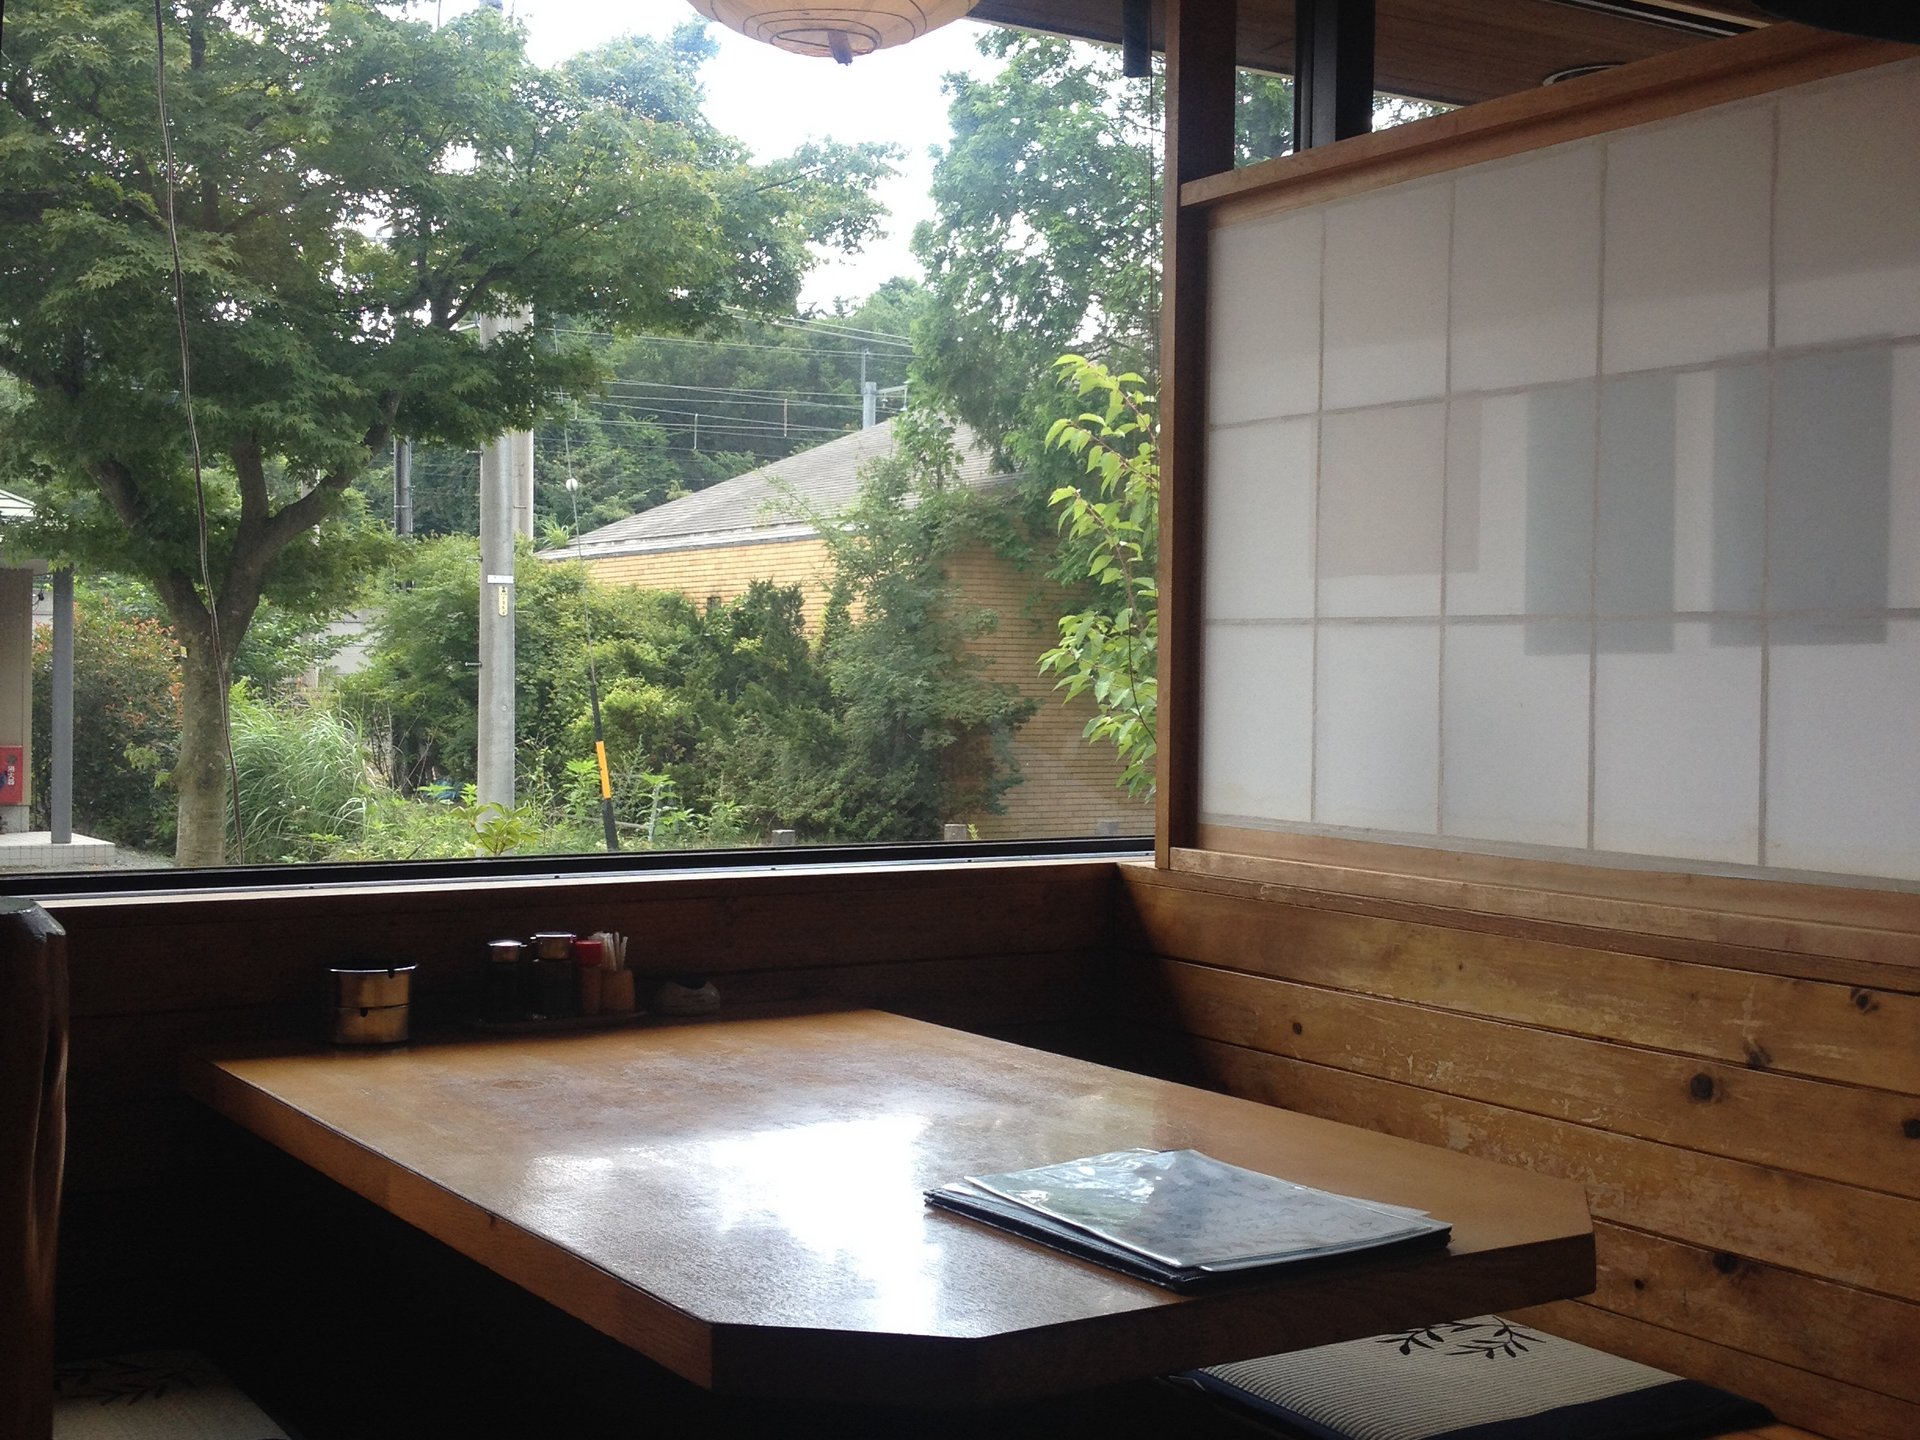 【軽井沢】自然&和な感じが良い◆信州そば屋でまったり/スペシャル¥1000以下美味定食ランチ有‼︎